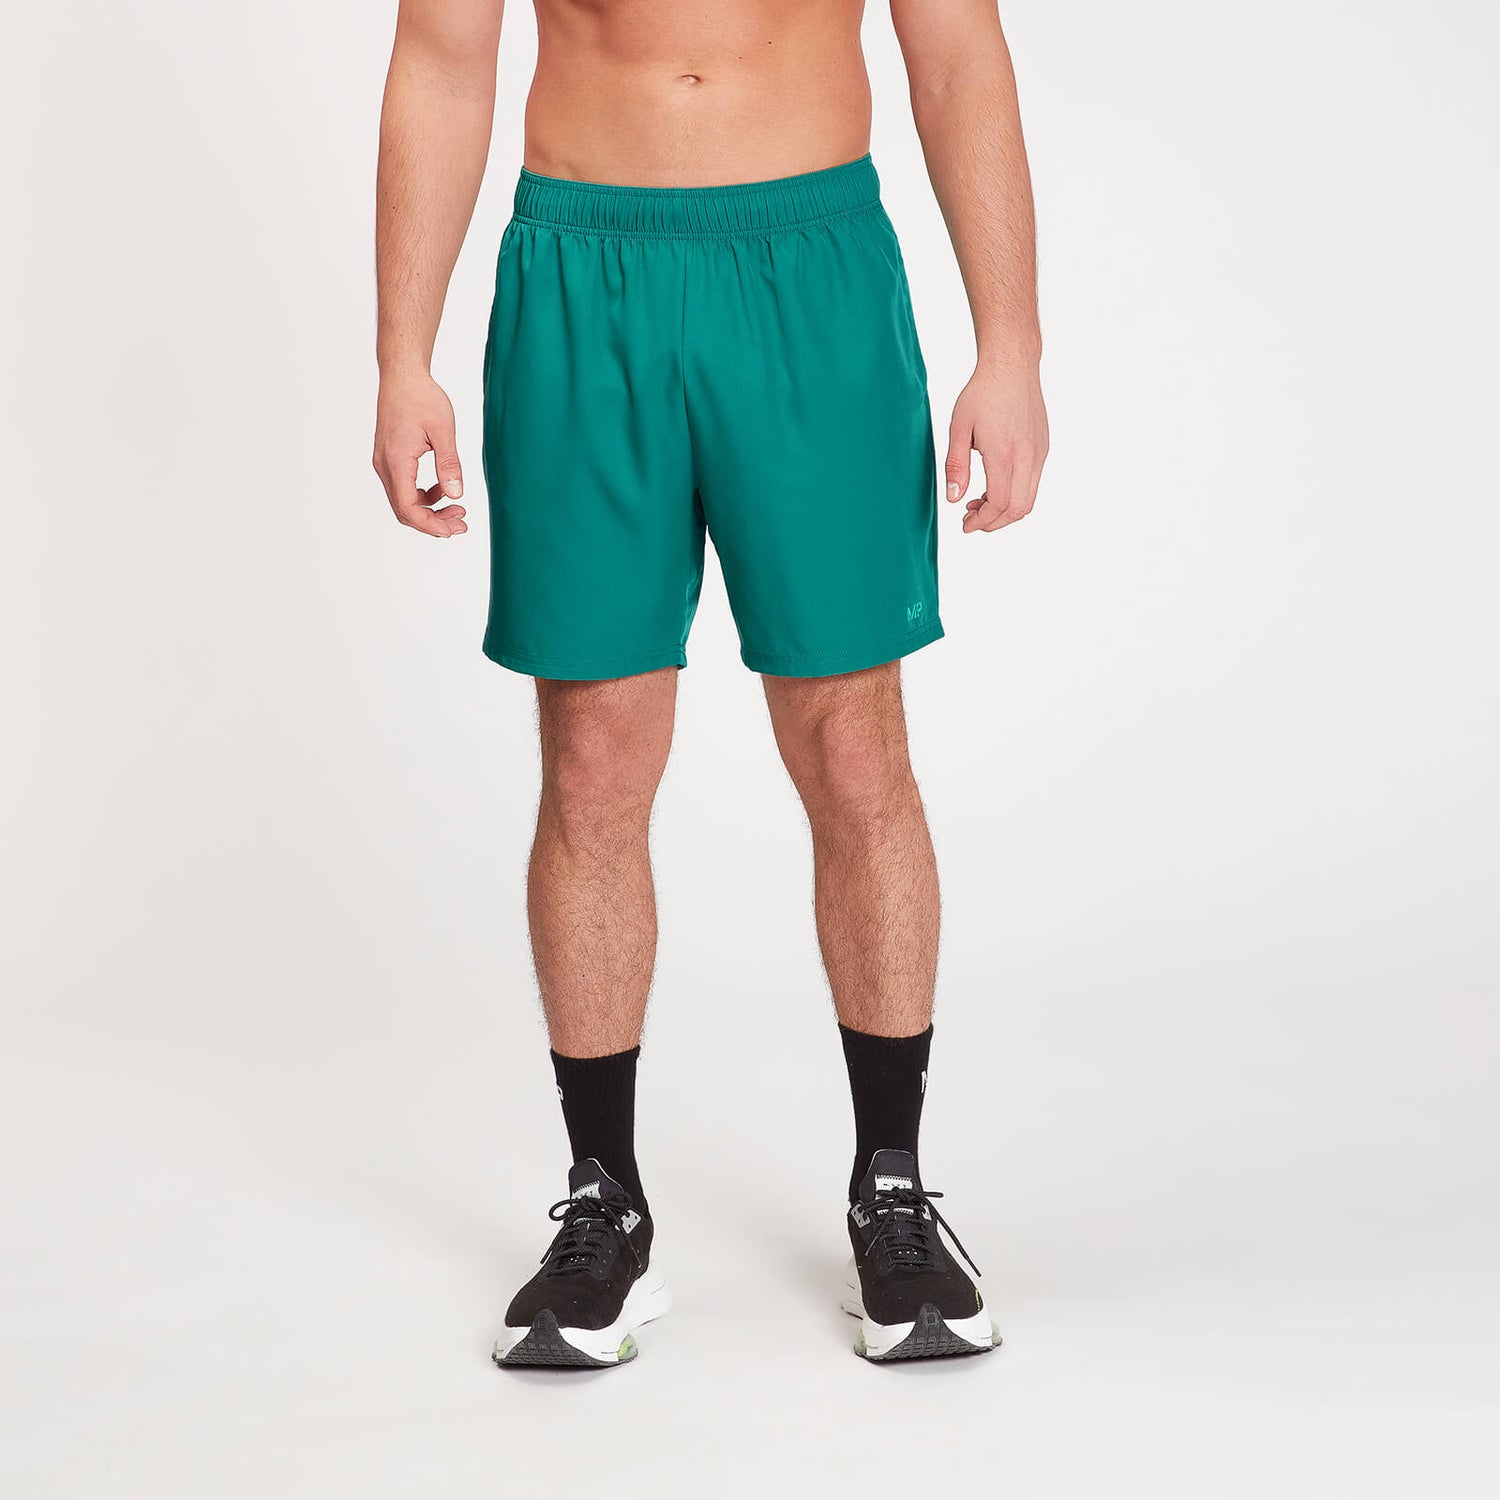 Pantaloncini sportivi con stampa effetto sfumato MP da uomo - Energy Green - XS